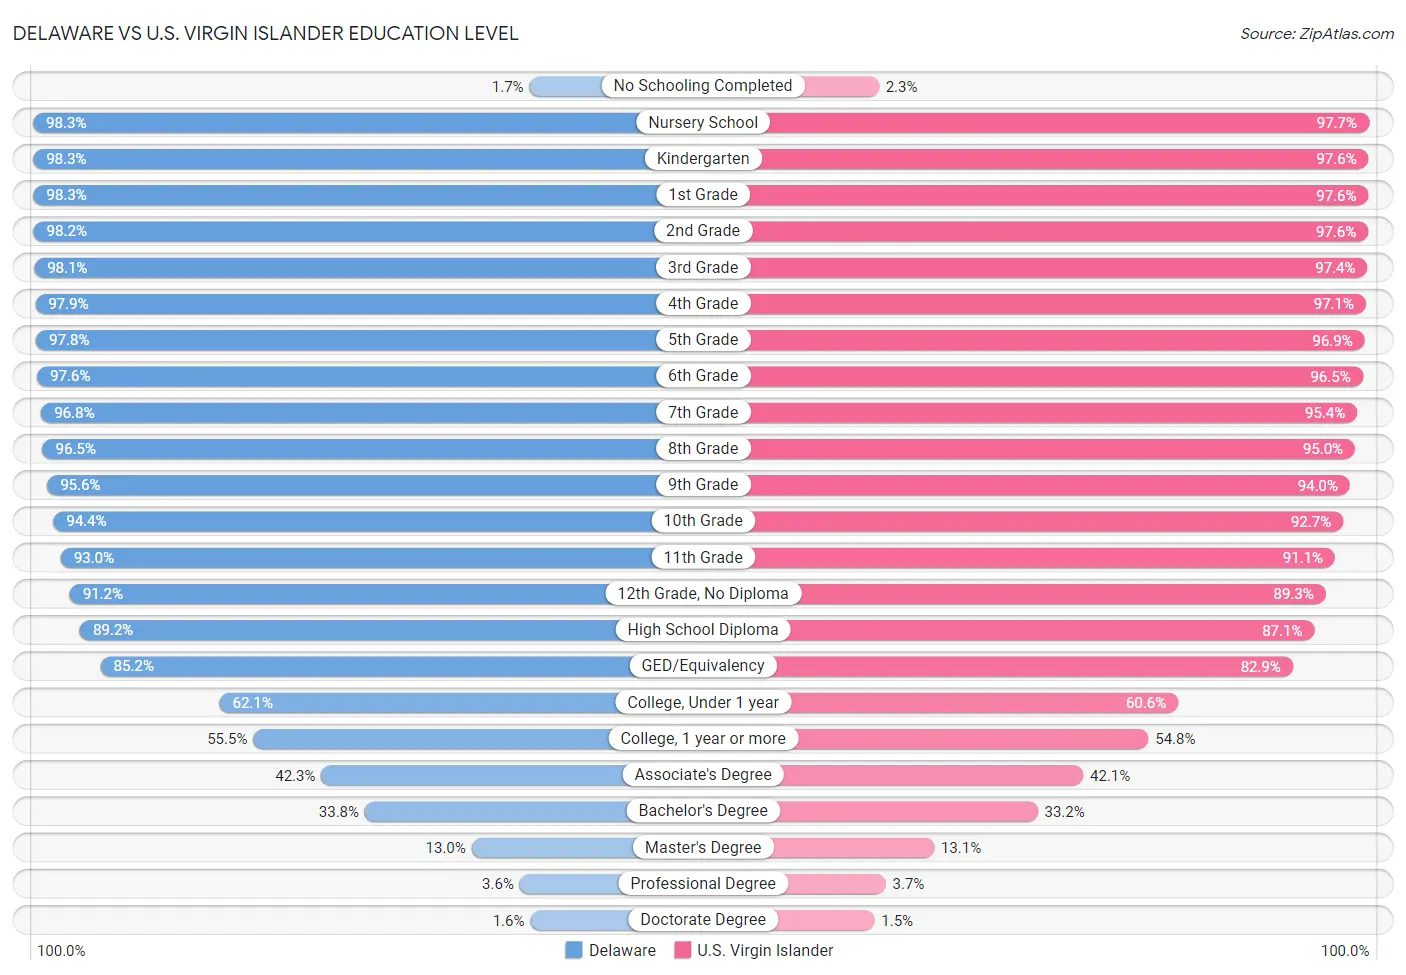 Delaware vs U.S. Virgin Islander Education Level